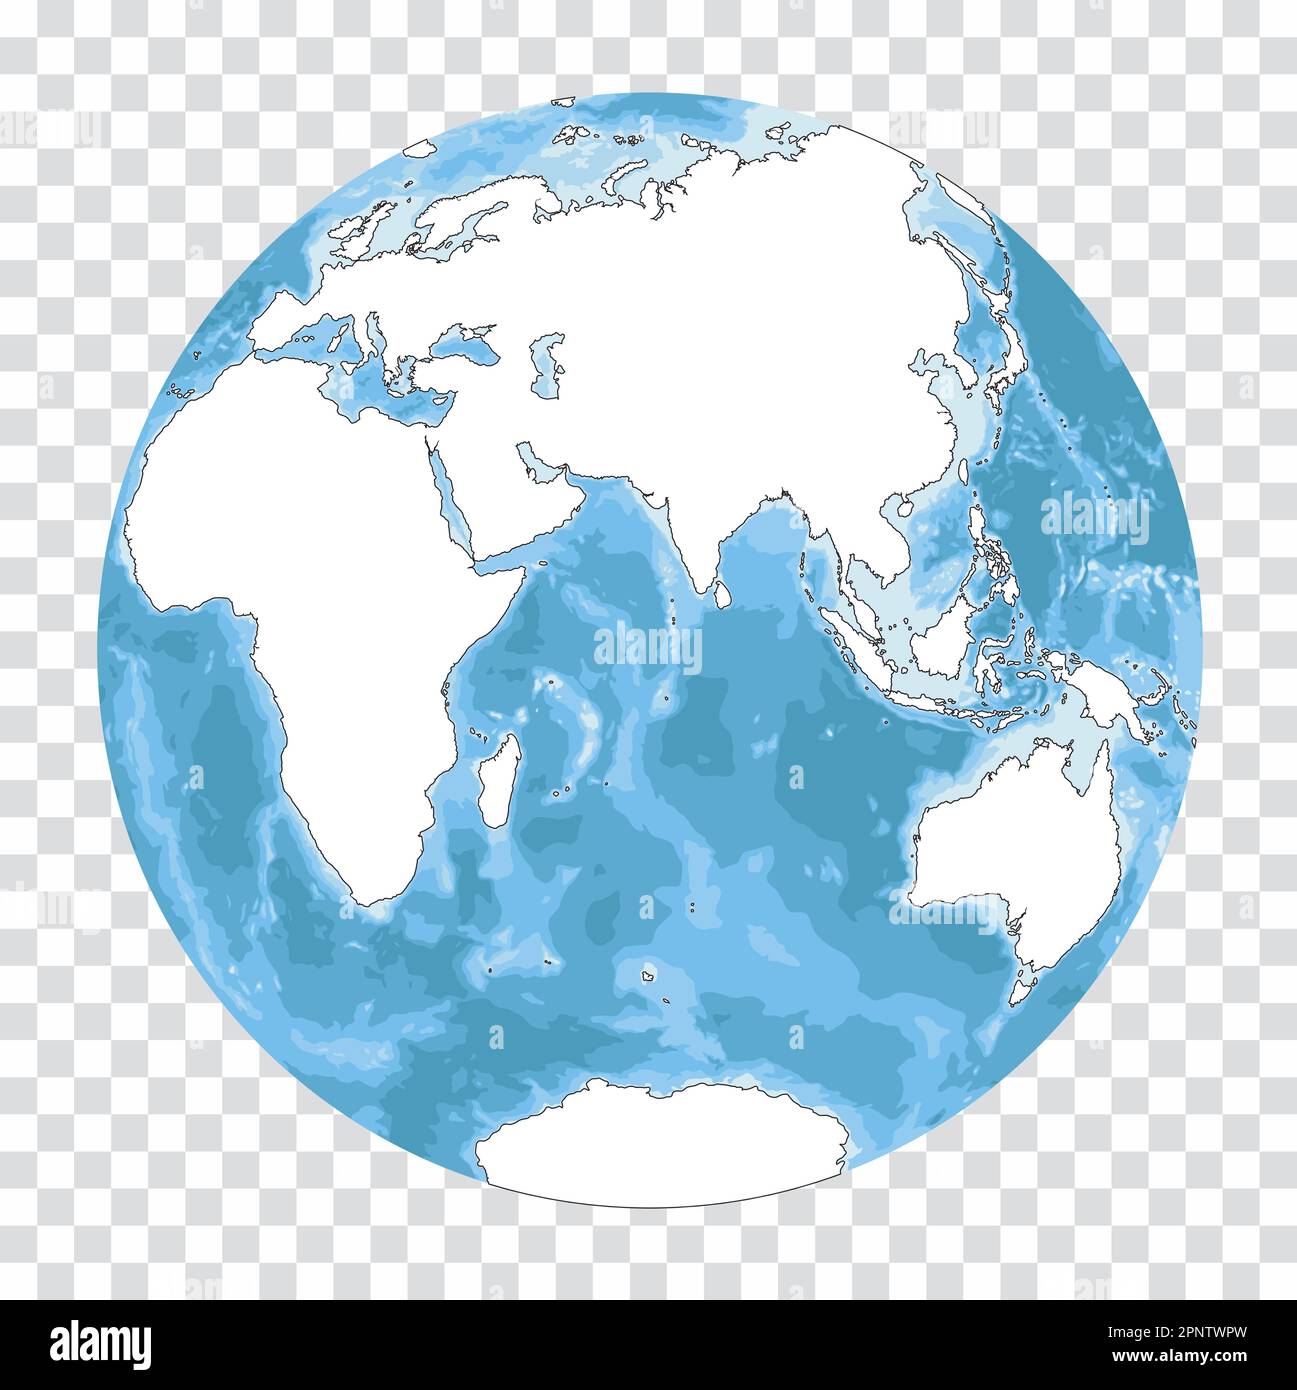 Silhouette très détaillée de la carte du monde en forme de globe terrestre. Projection globulaire Nicolosi – plate. Illustration de Vecteur